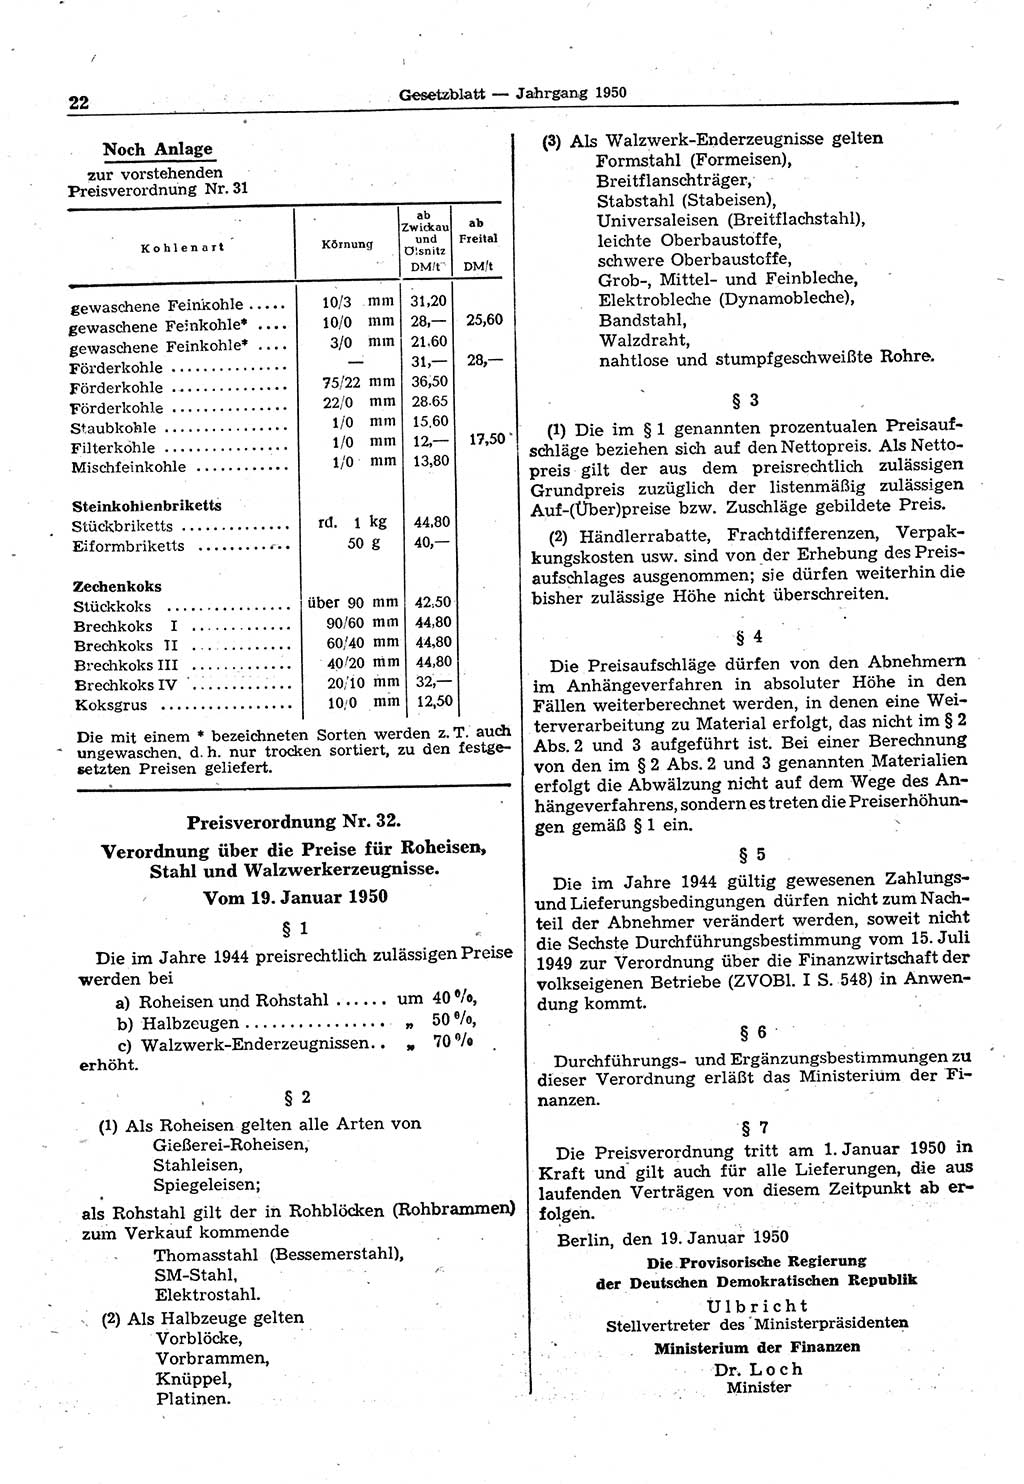 Gesetzblatt (GBl.) der Deutschen Demokratischen Republik (DDR) 1950, Seite 22 (GBl. DDR 1950, S. 22)